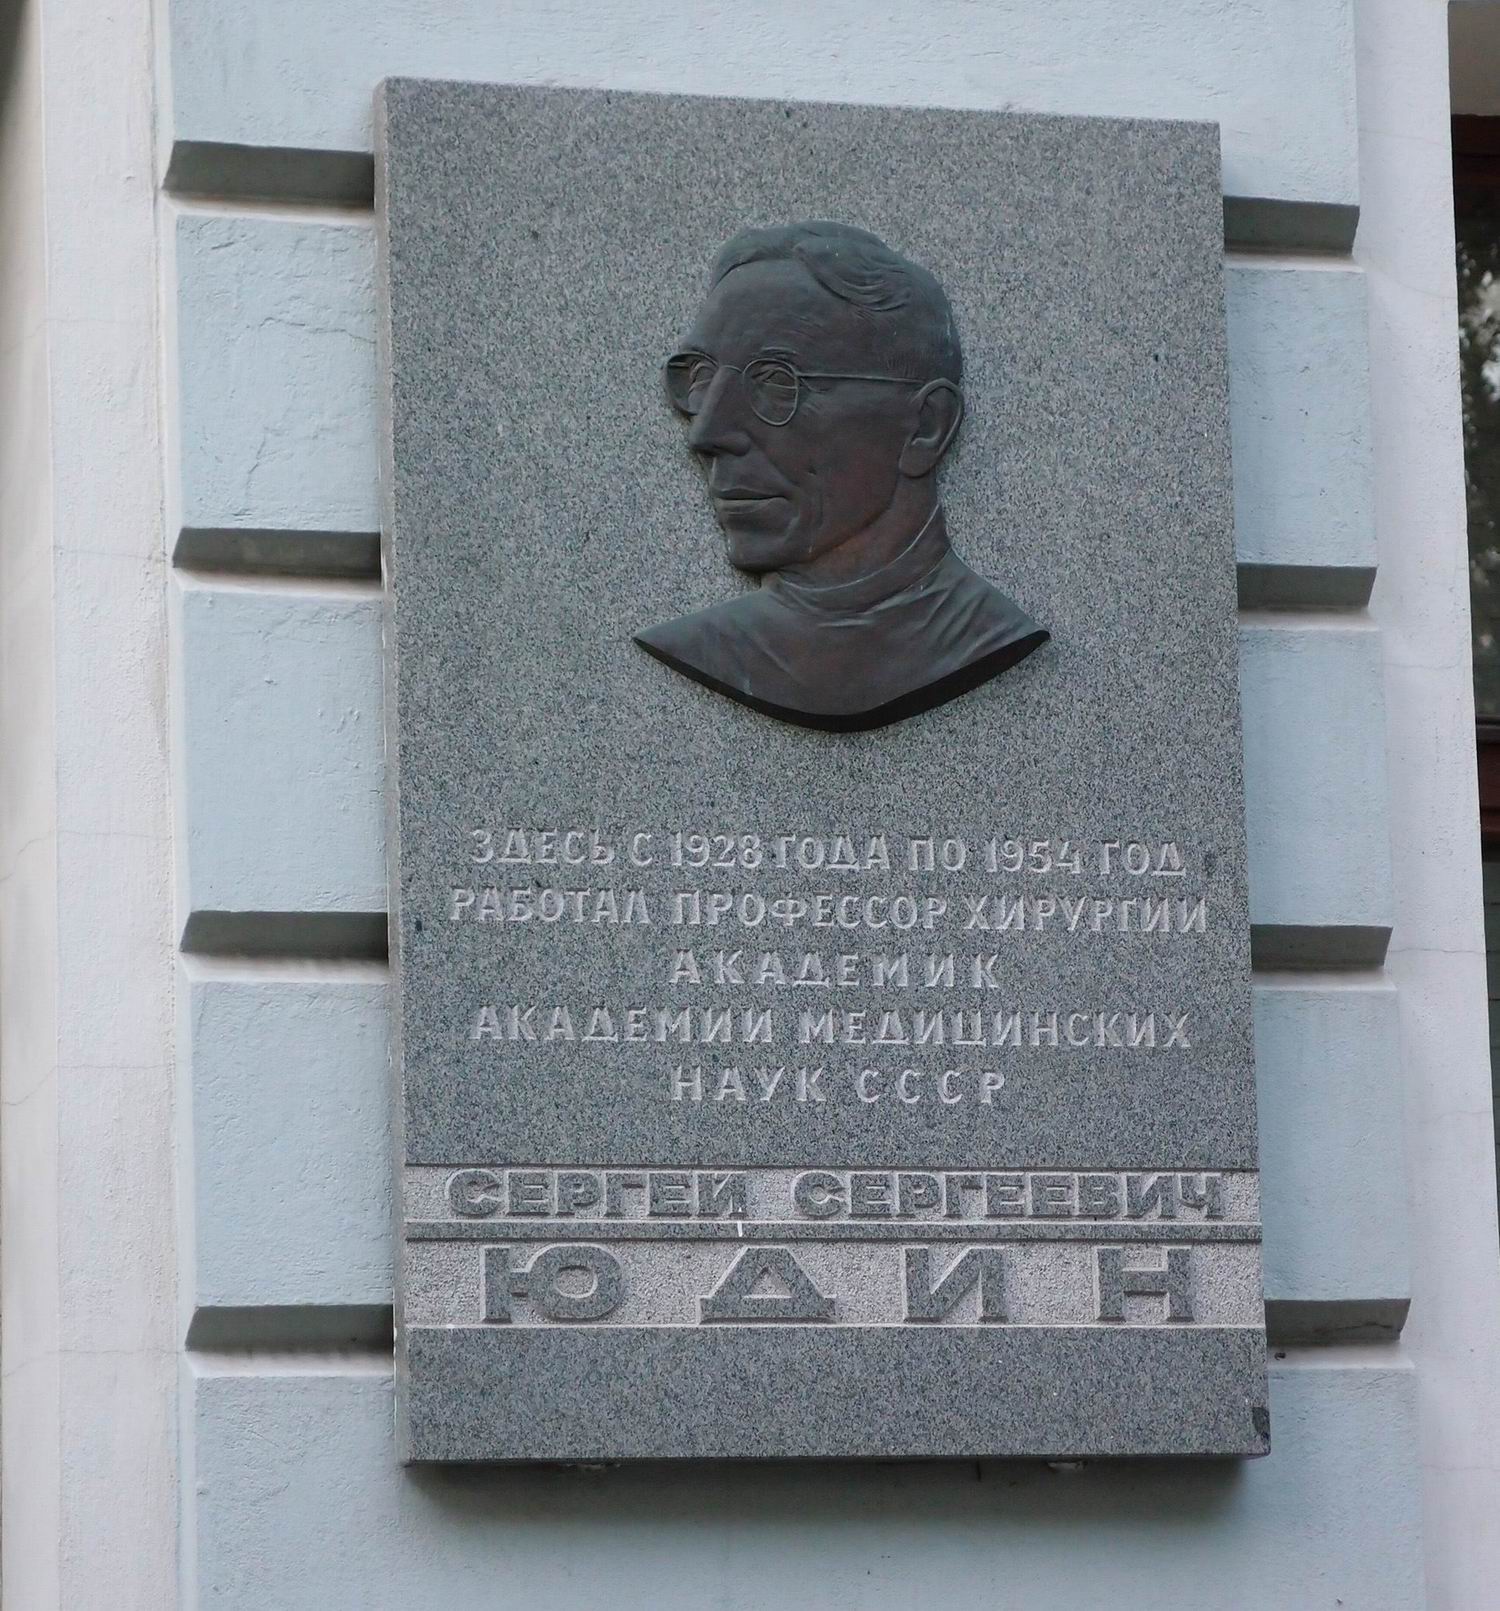 Мемориальная доска Юдину С.С. (1891–1954), на Большой Сухаревской площади, дом 3, строение 4.